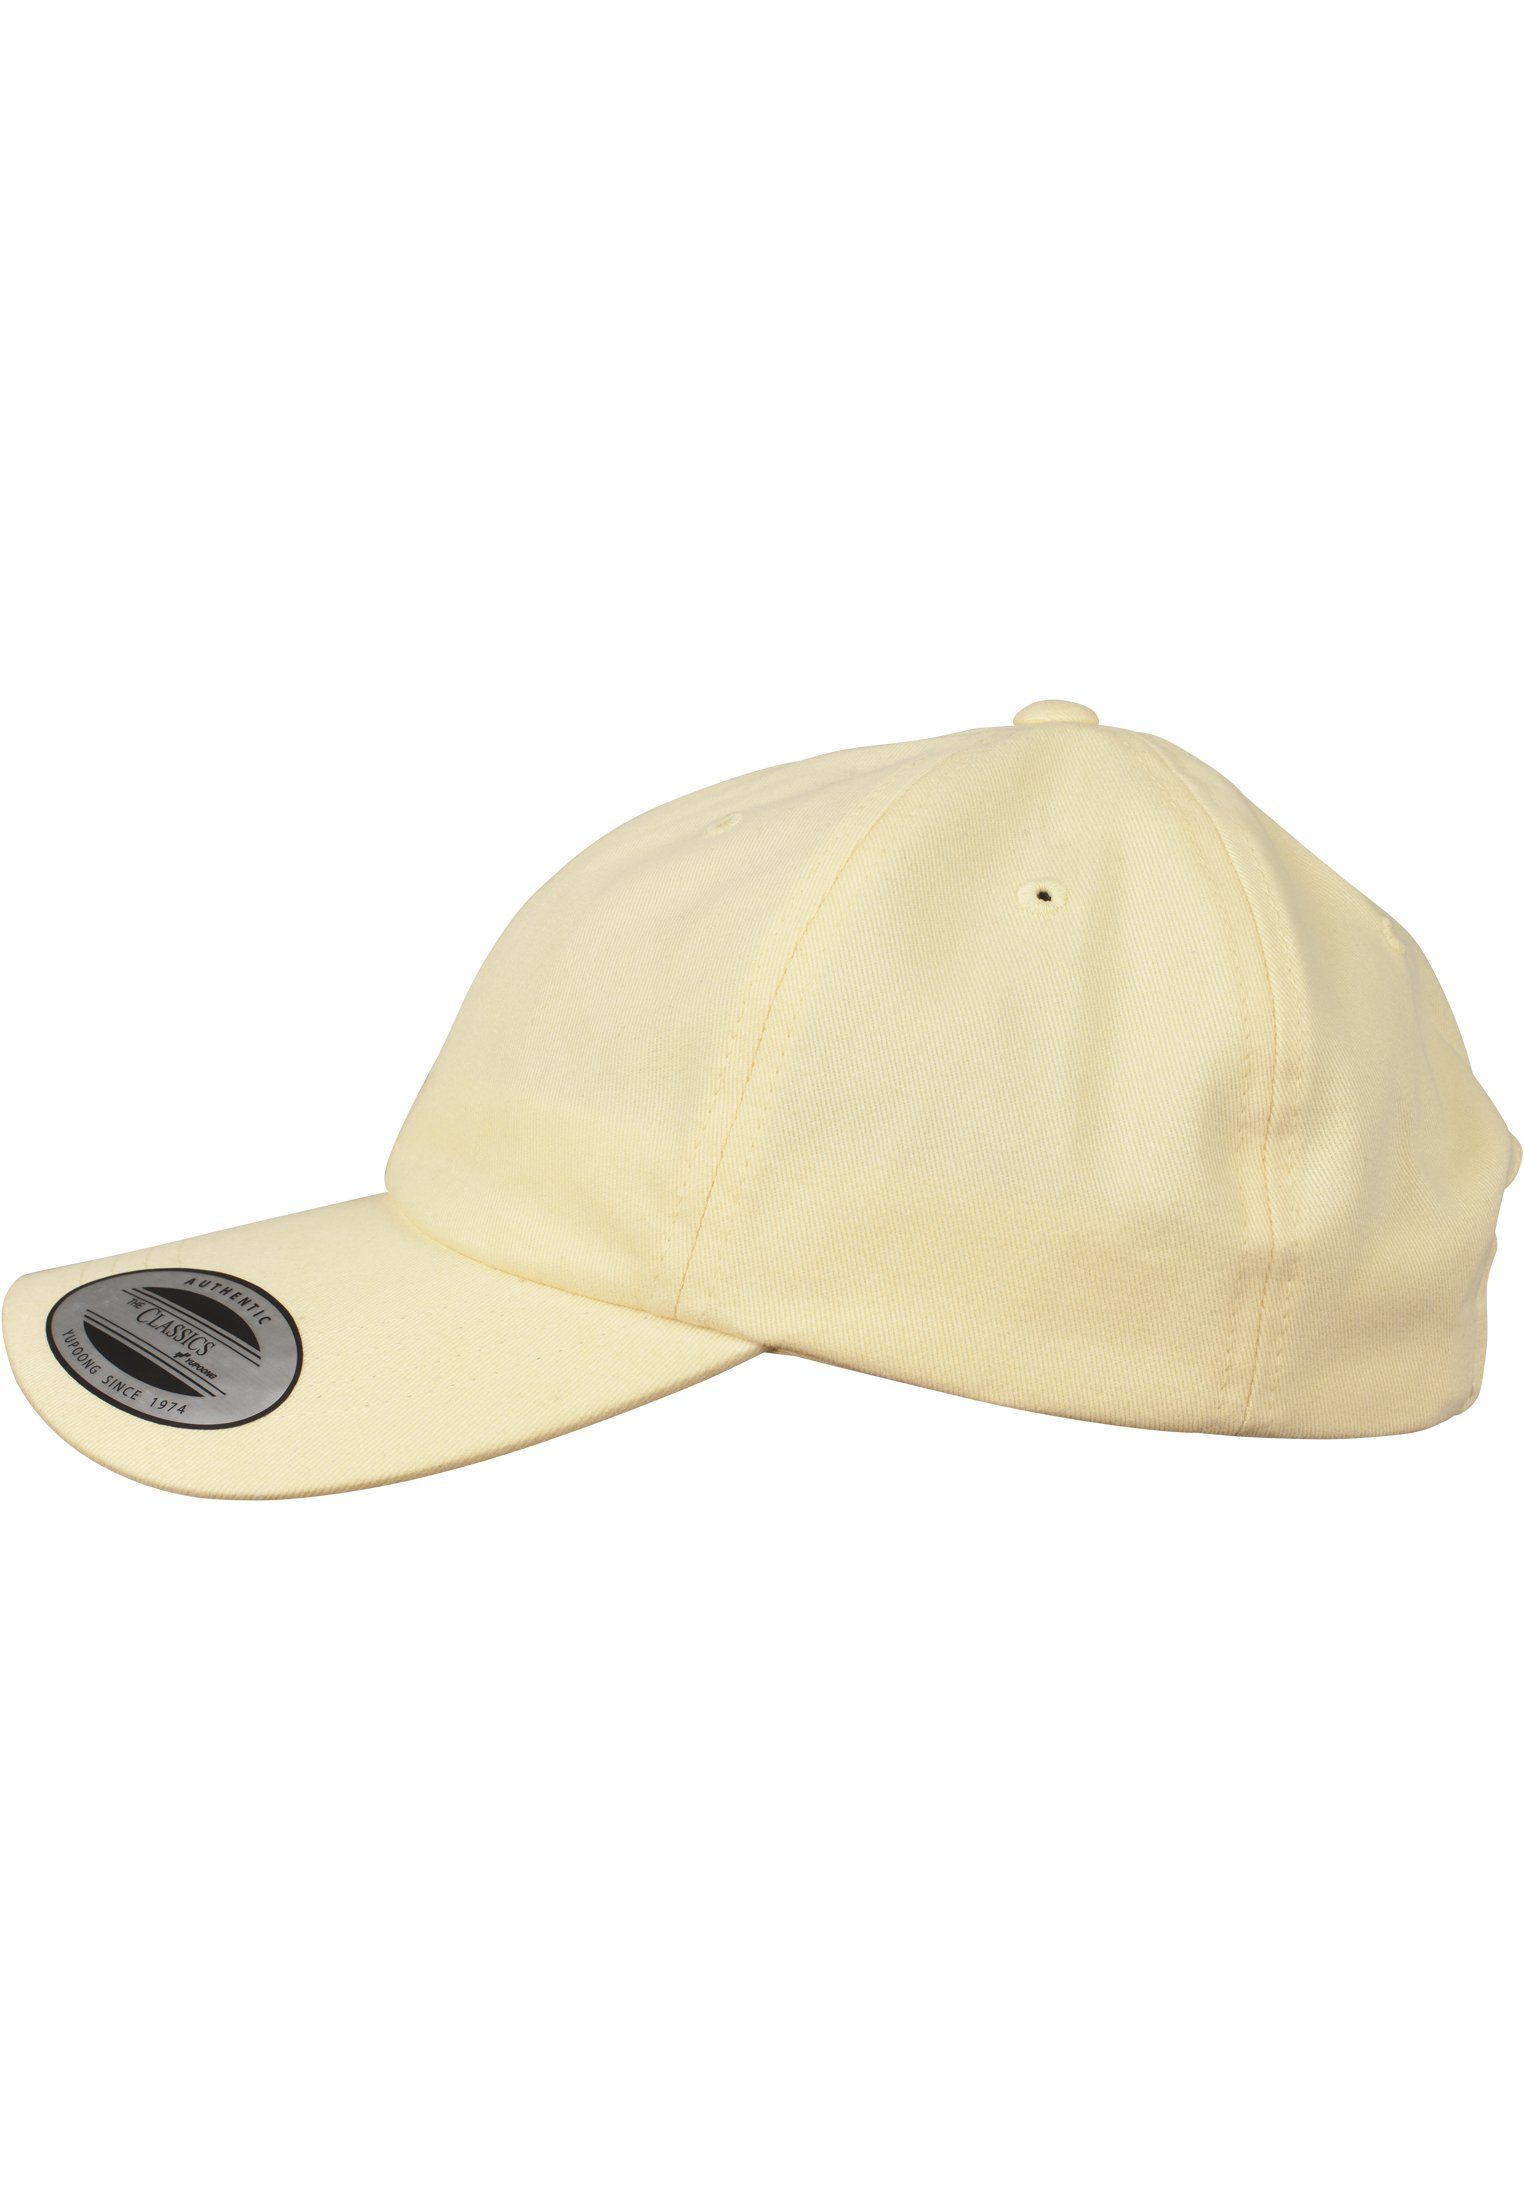 Flexfit Flex Cap Accessoires Peached yellow Cotton Twill Cap Dad